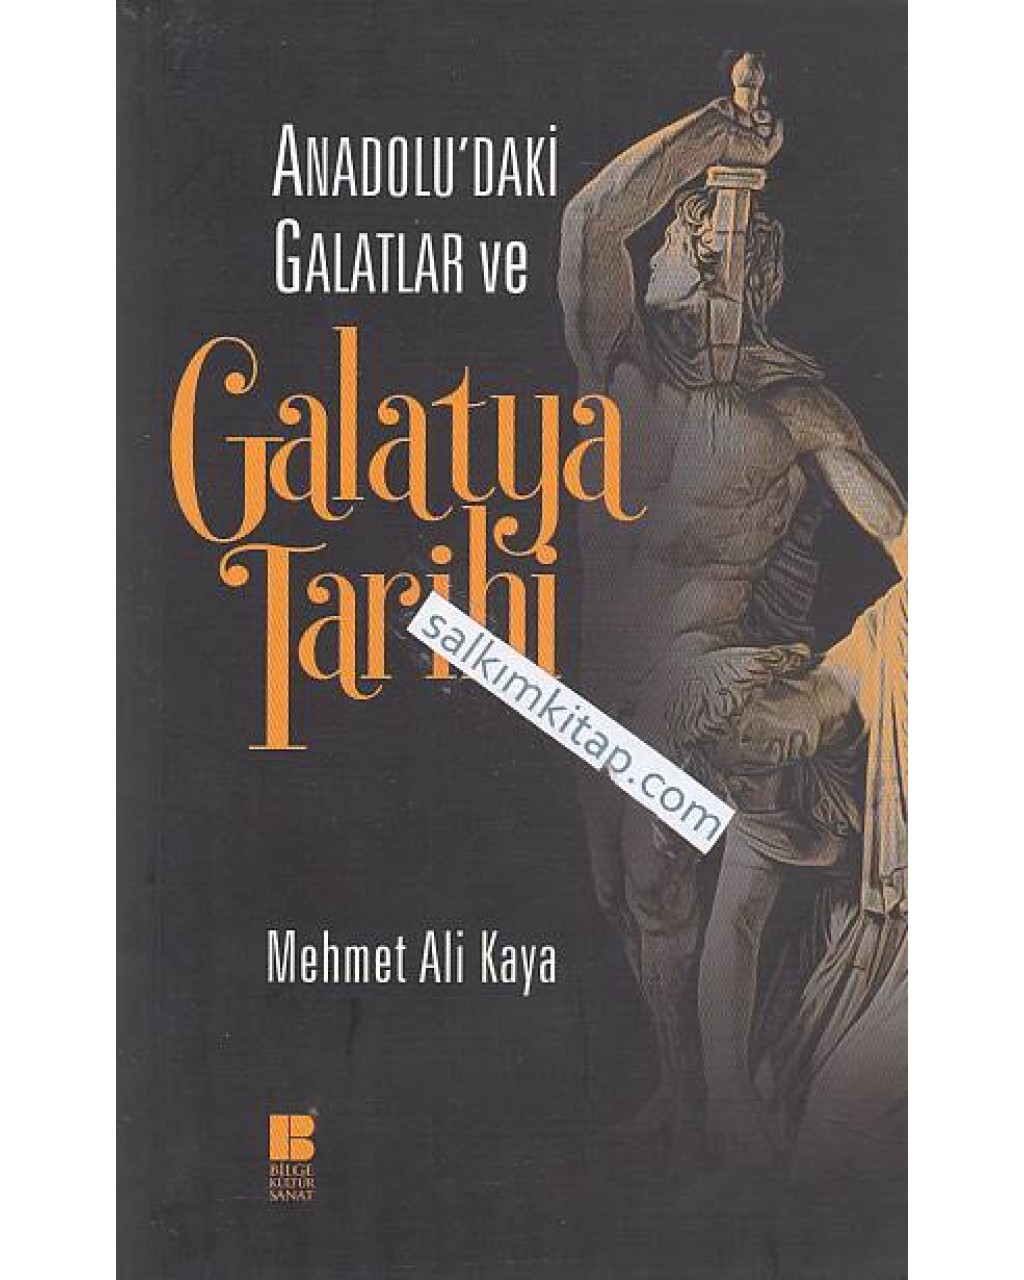 Anadolu’daki Galatlar ve Galatya Tarihi